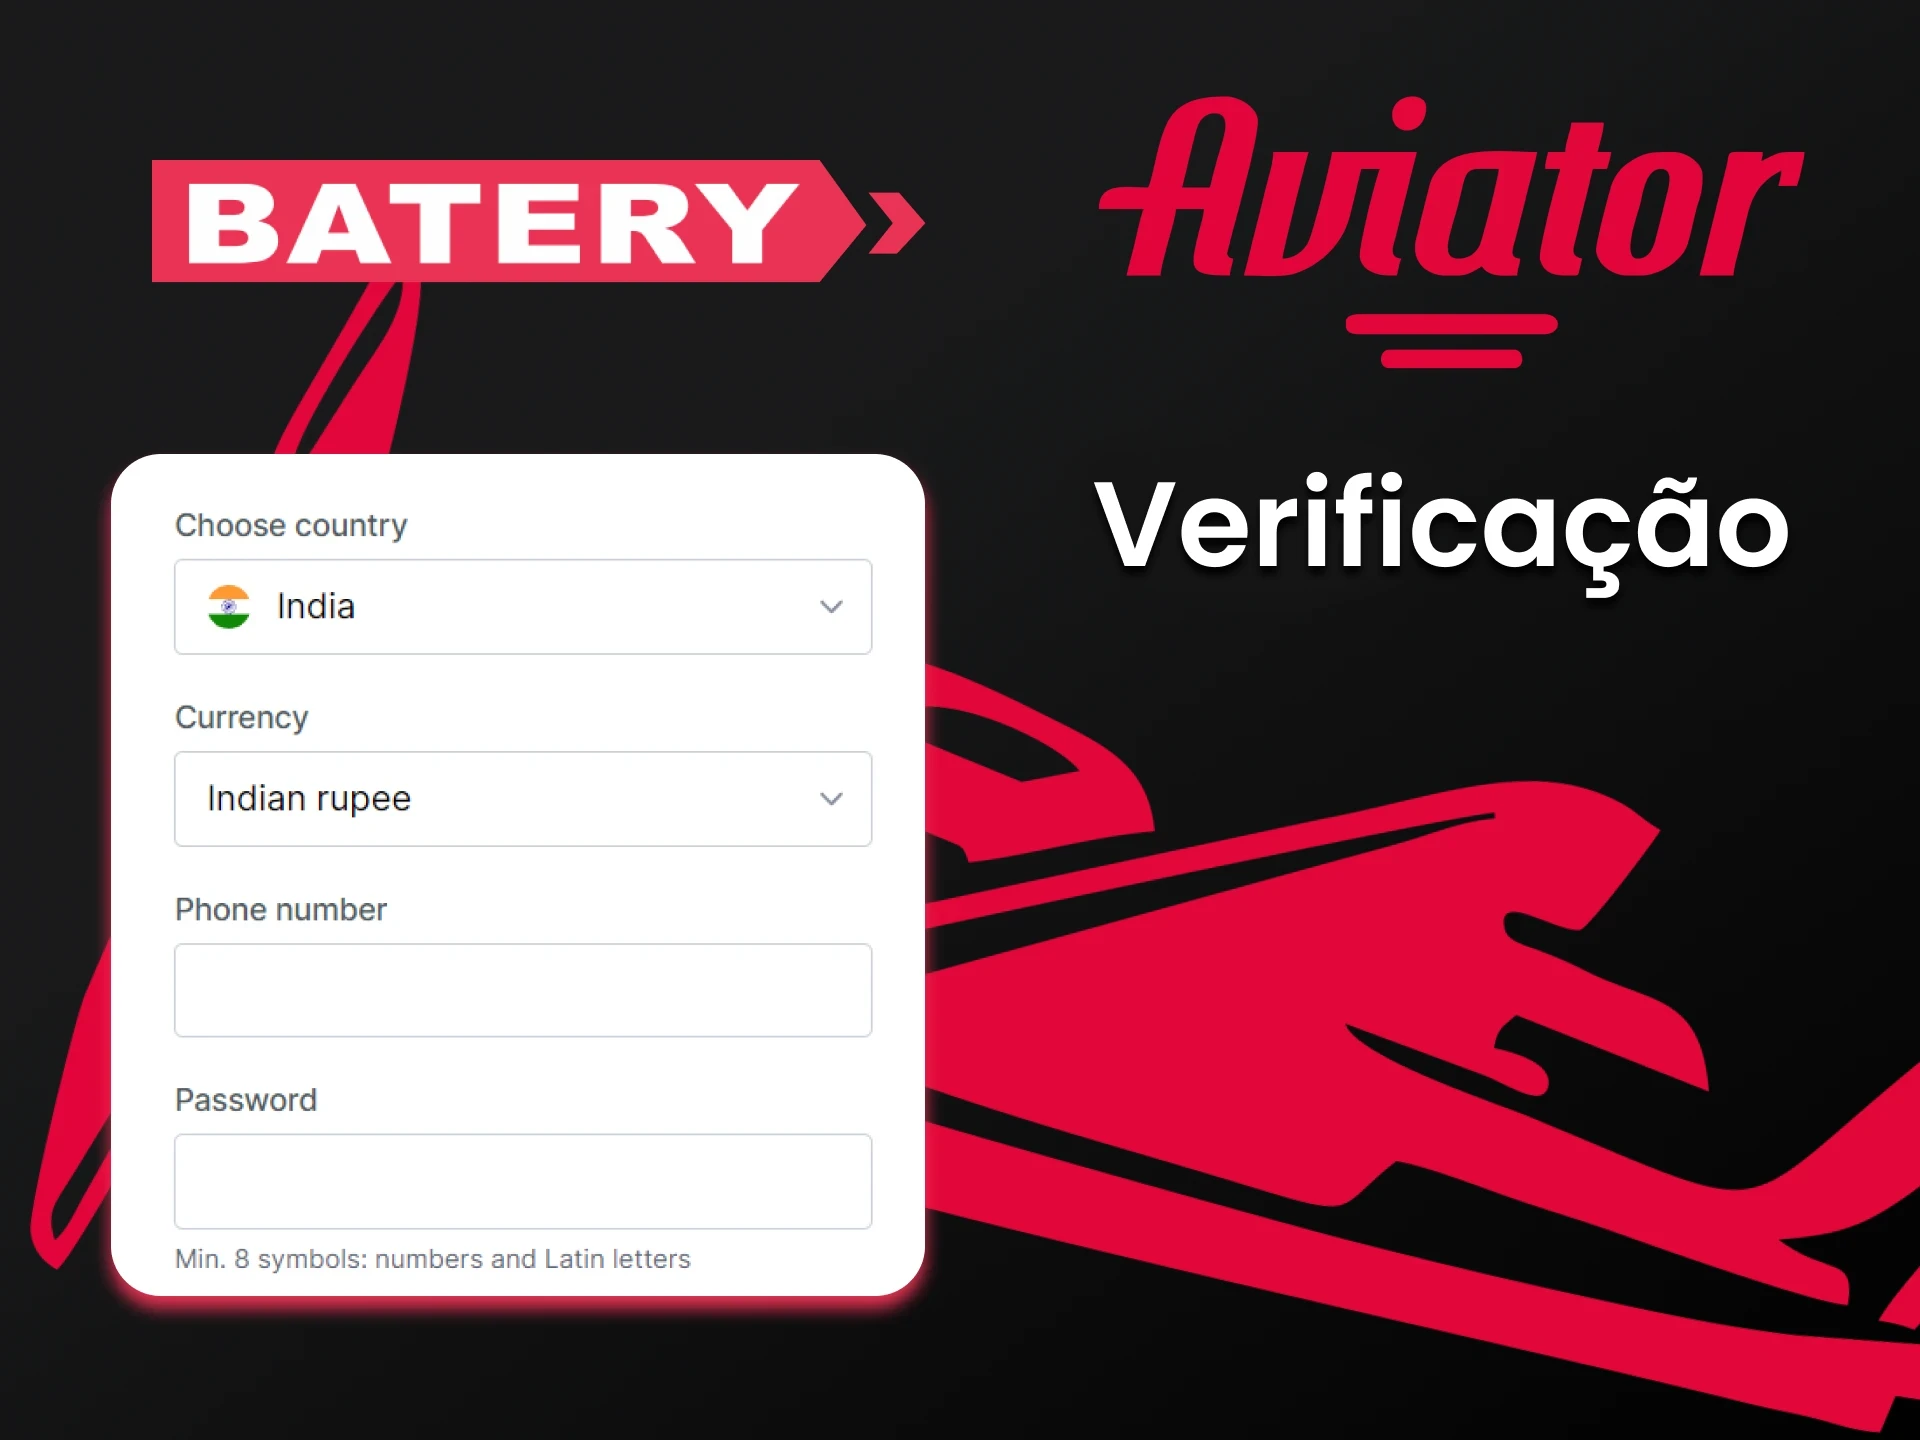 Use seus dados pessoais para jogar Aviator no Batery.